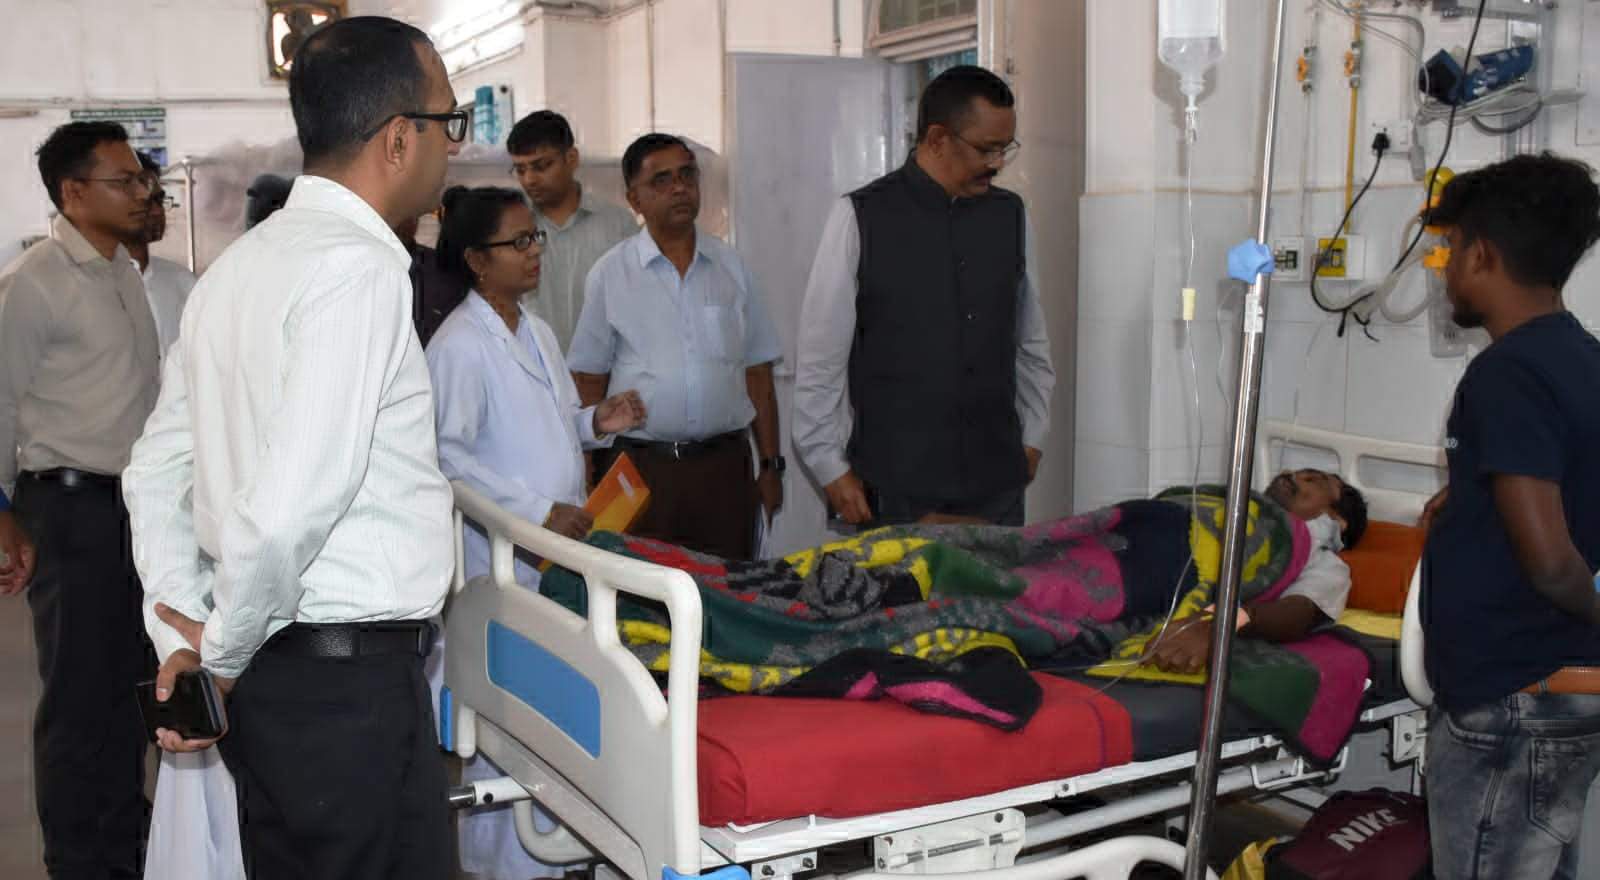 आयुष्मान कार्ड बनाकर हितग्राहियों को दिया जाए योजना का लाभ - धावड़े, कमिश्नर ने नारायणपुर जिला अस्पताल का किया निरीक्षण